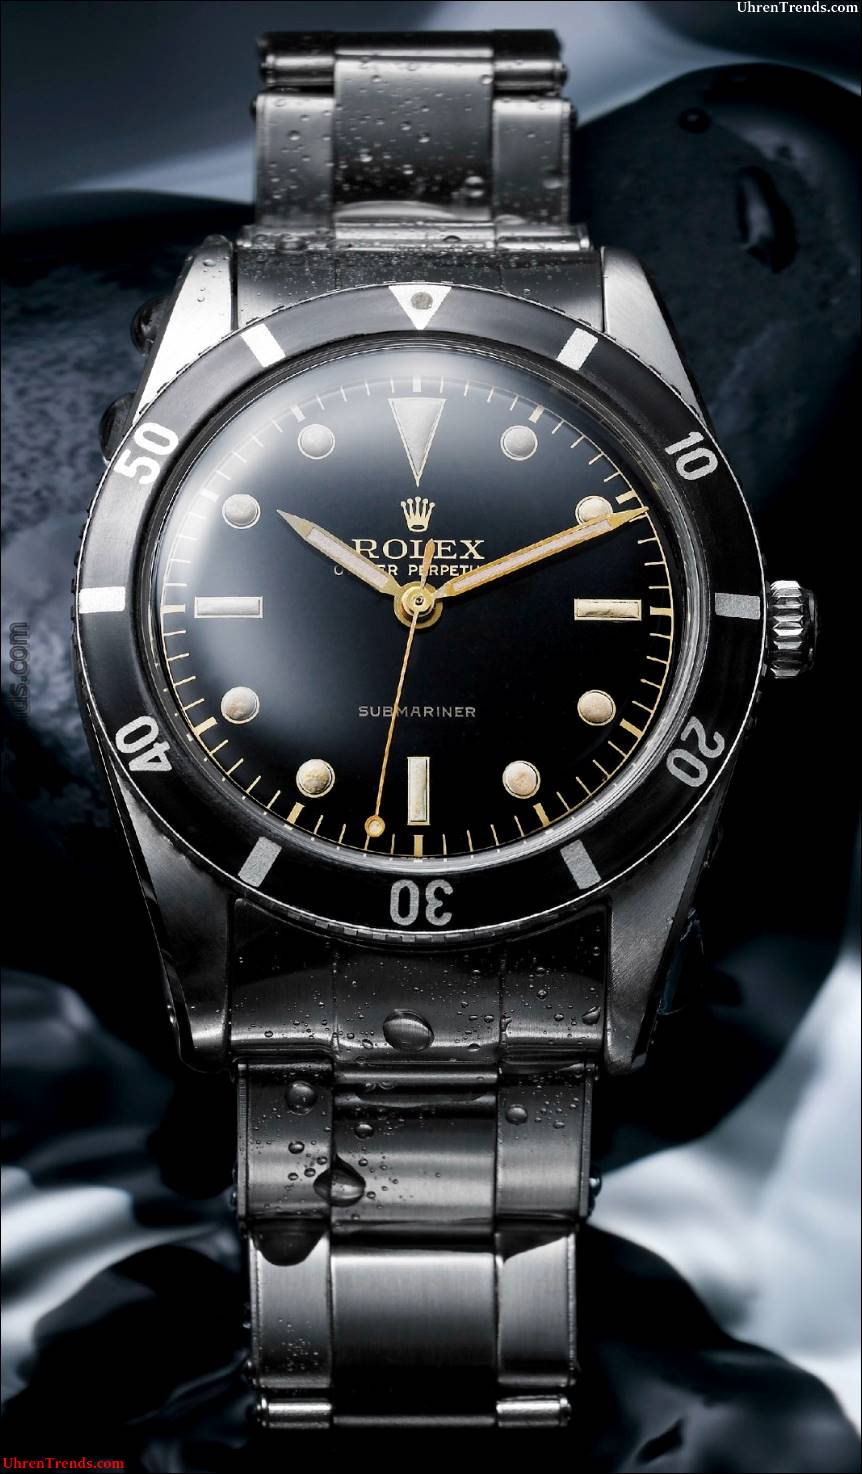 Die erste Rolex Submariner Uhr  